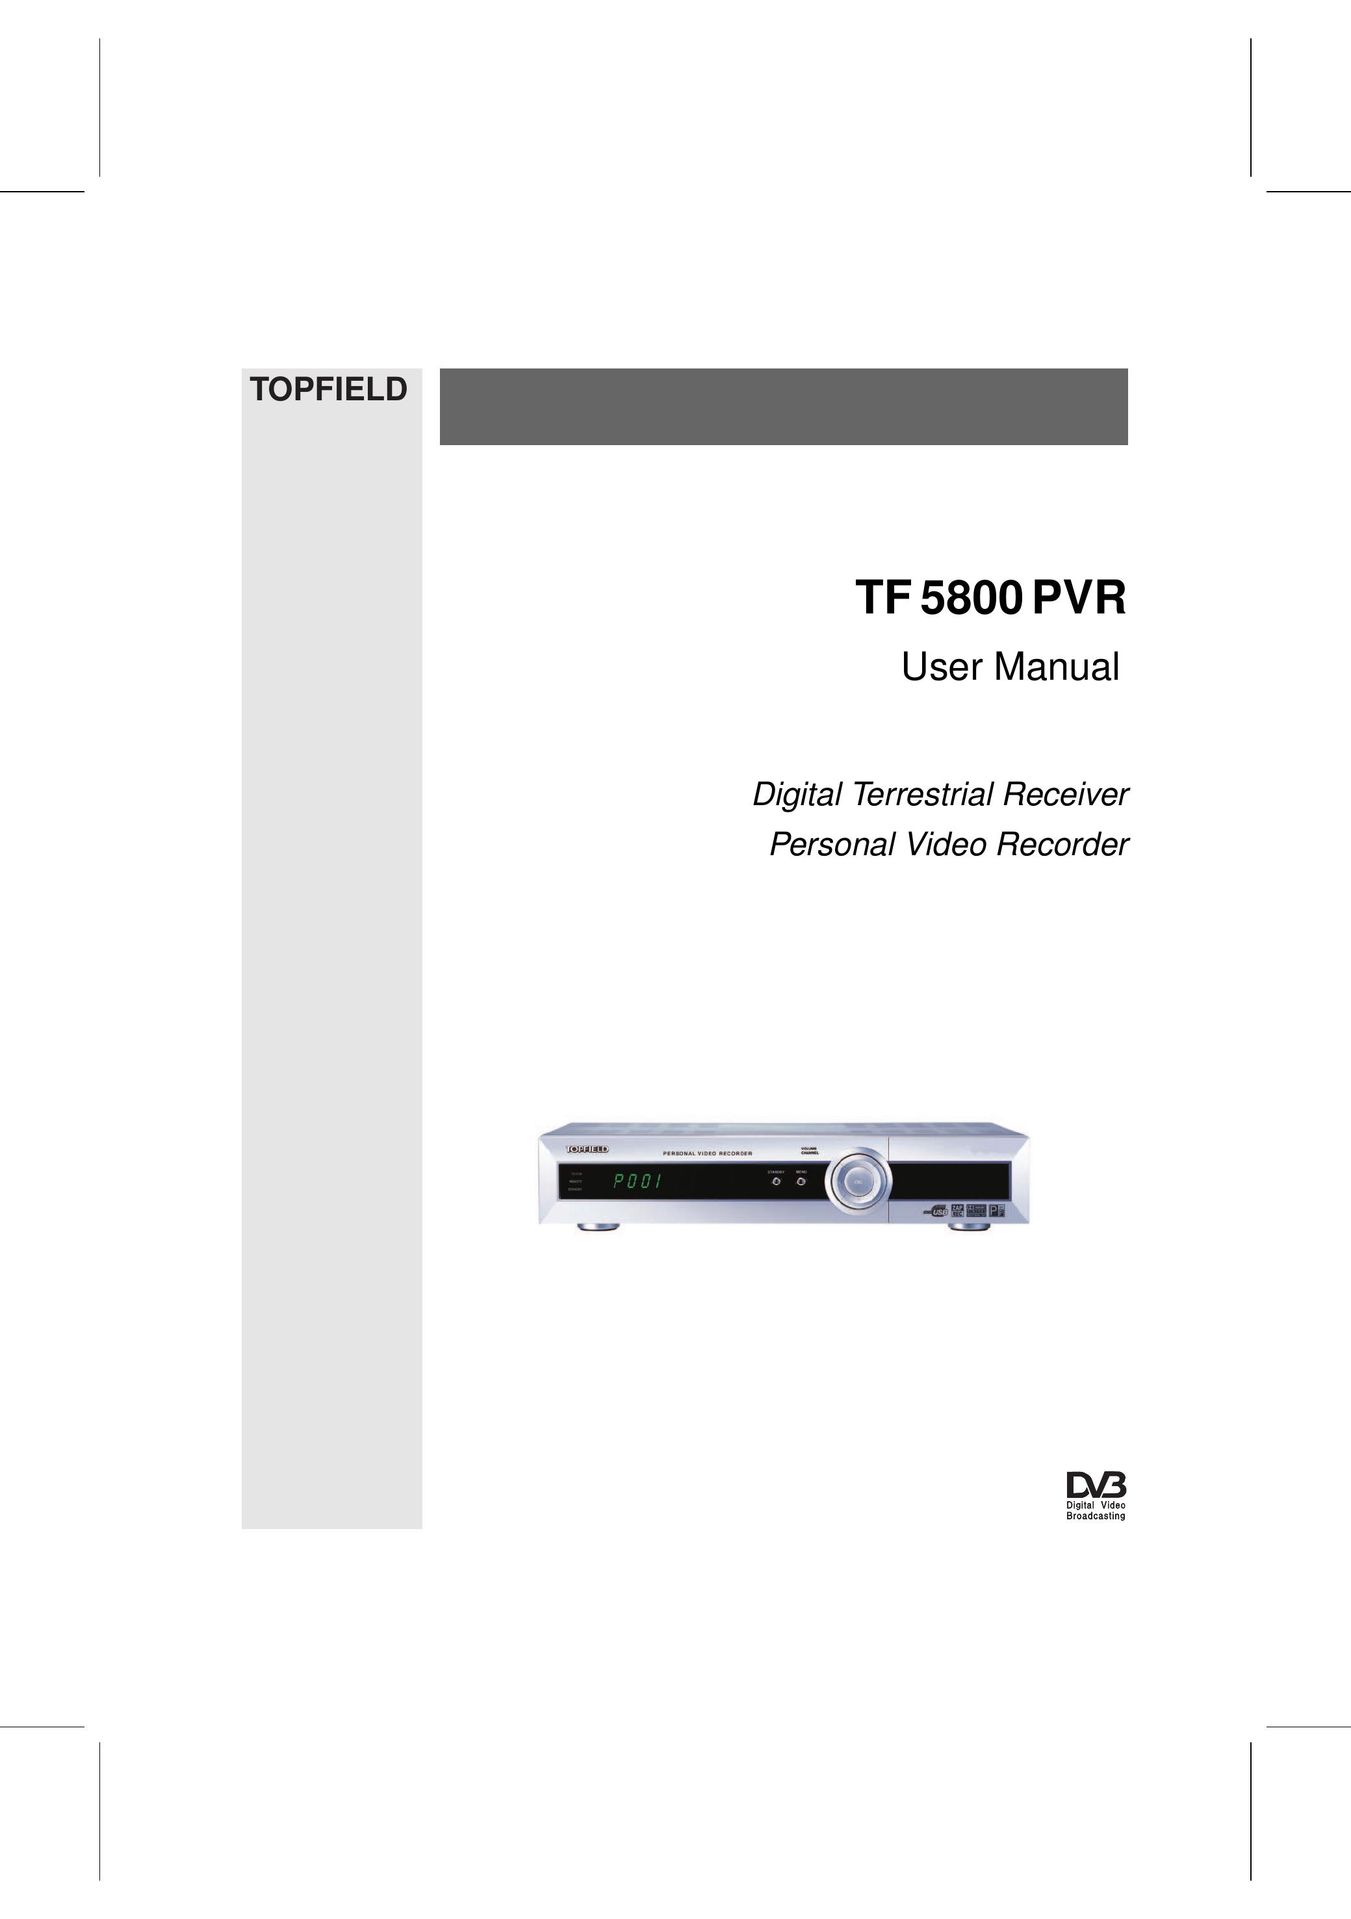 Topfield TF 5800 PVR DVR User Manual